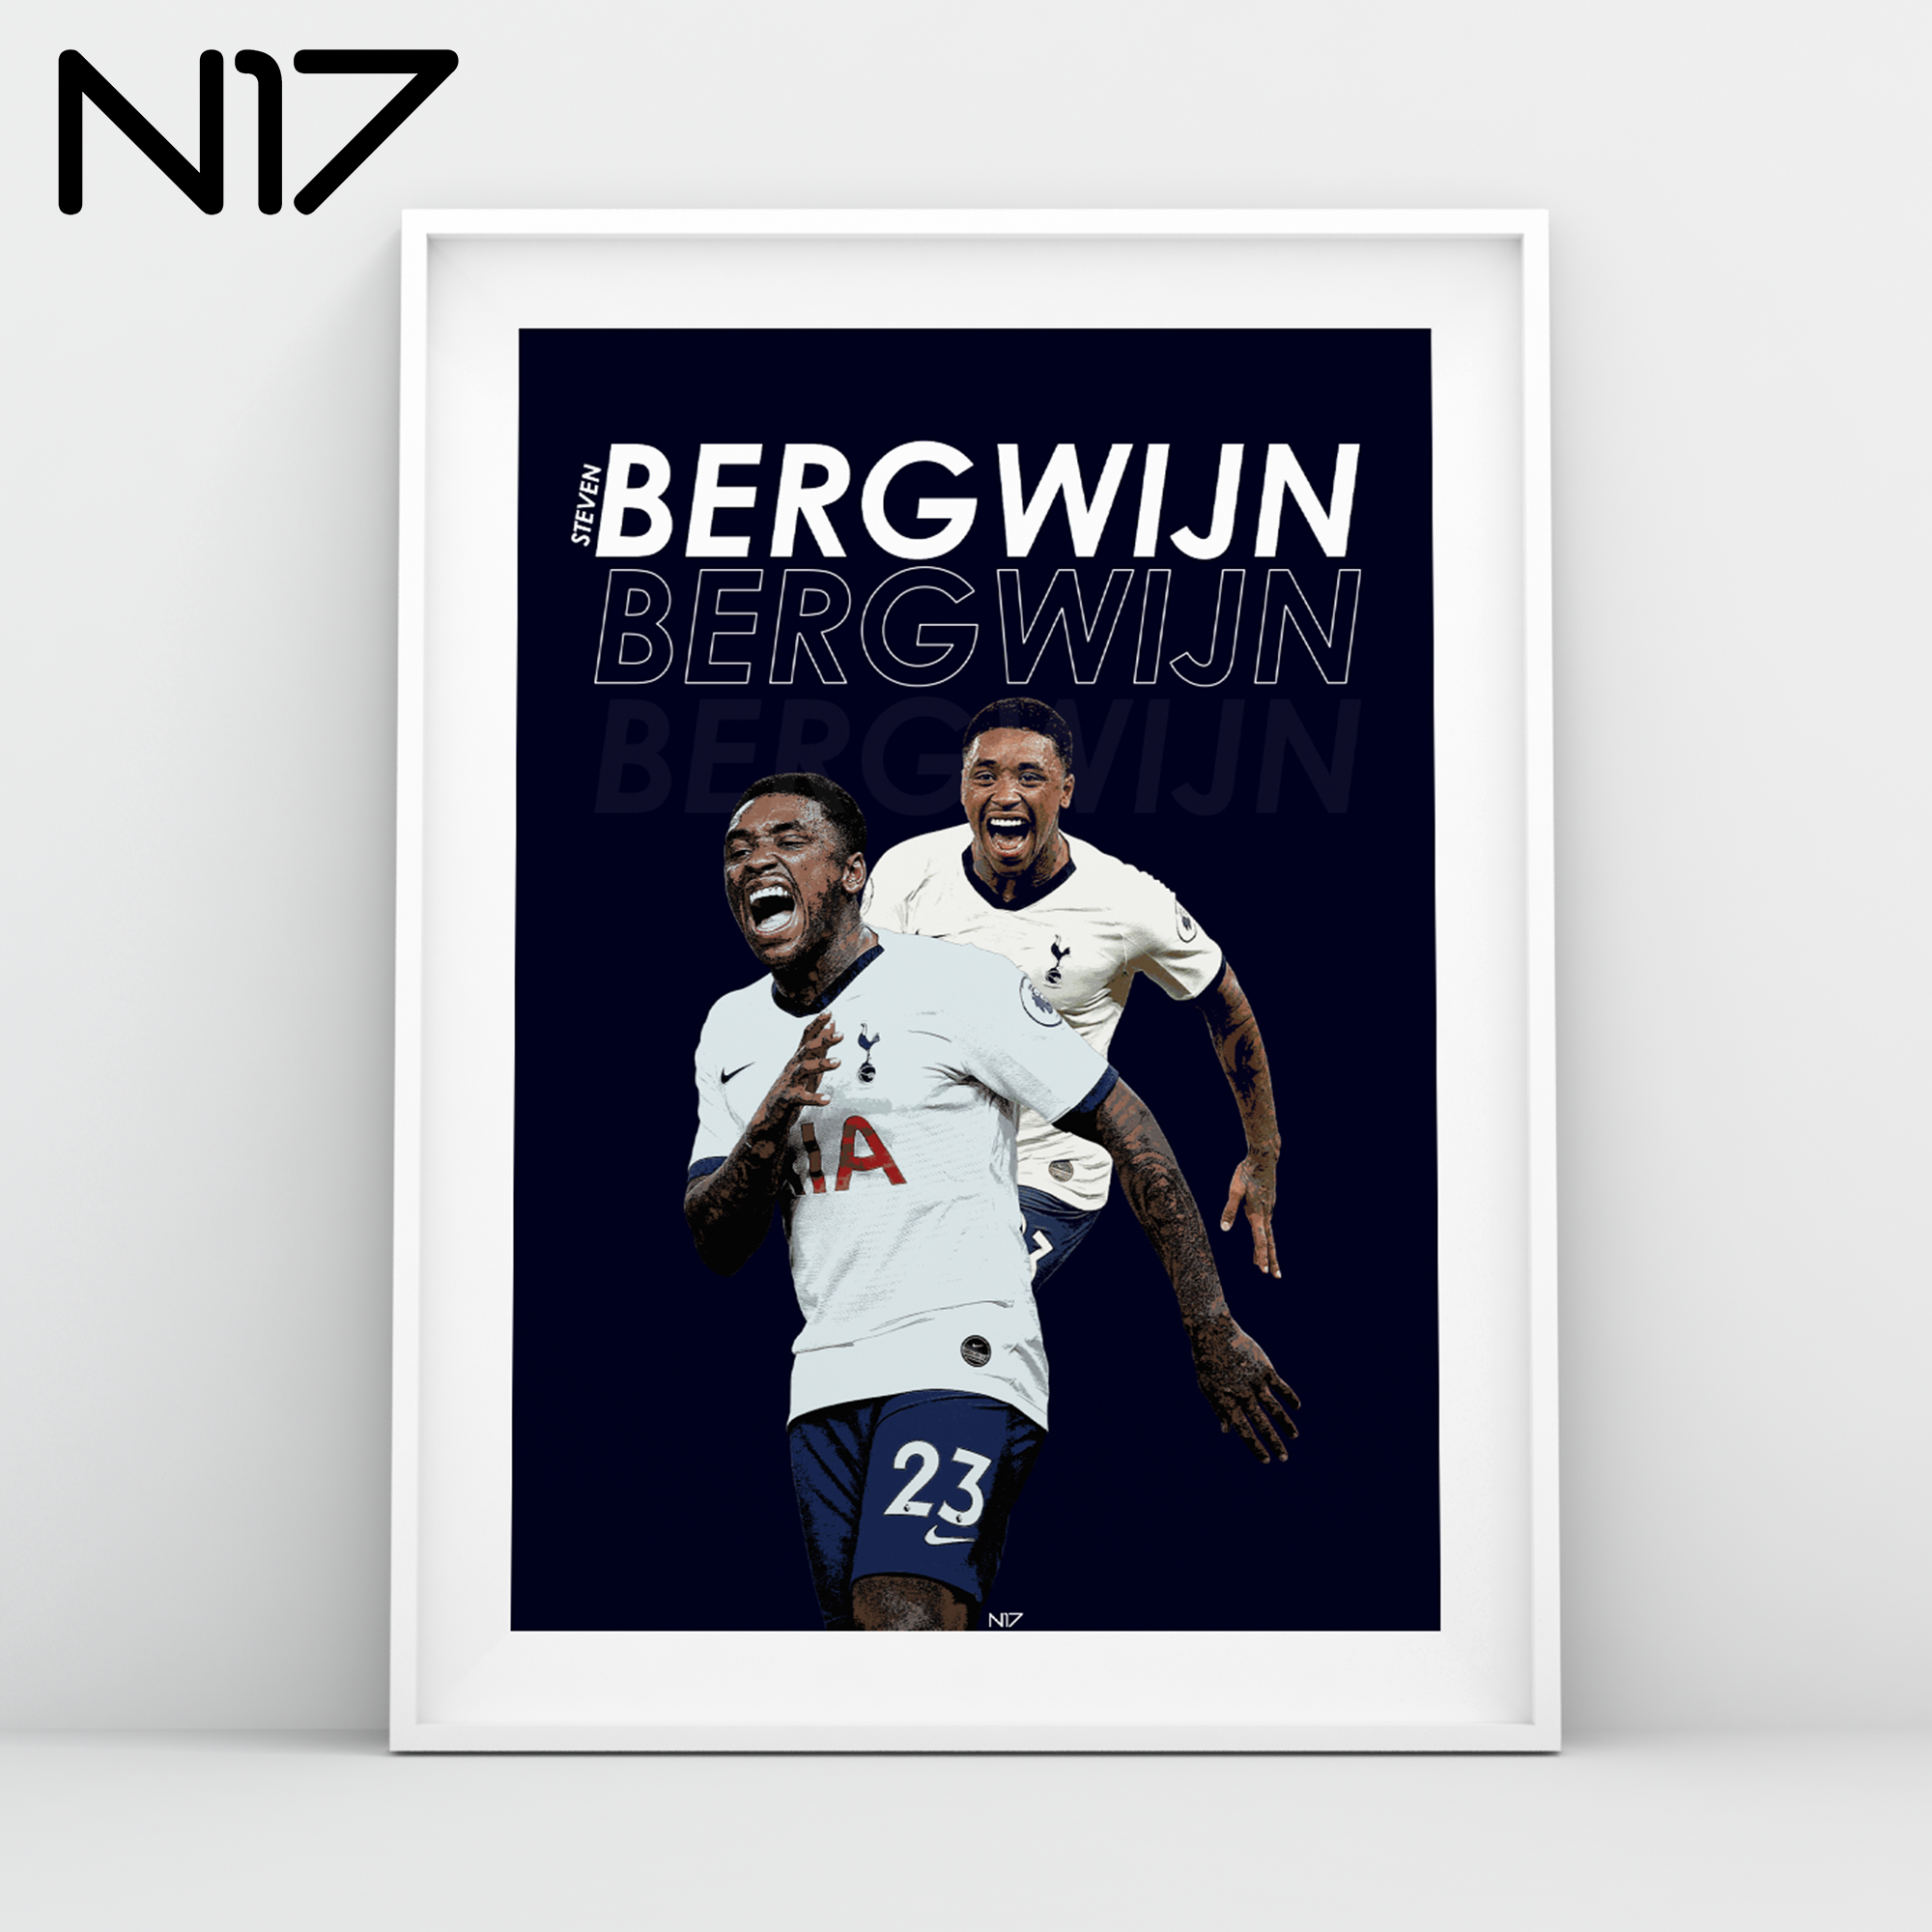 Steven Begwijn Spurs Debut THFC Tottenham Hotspur striker A3 print N17 design